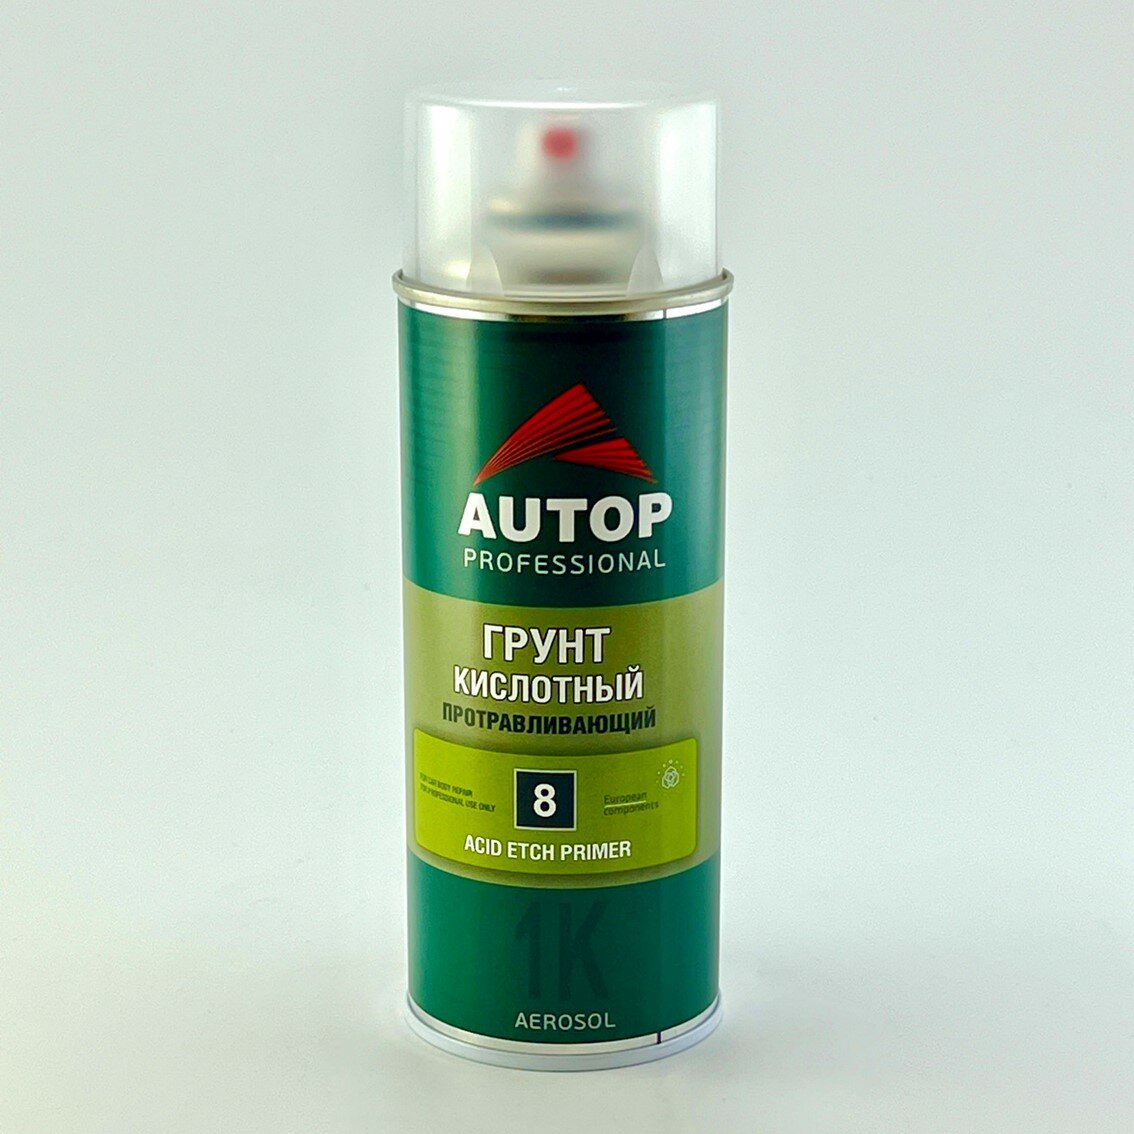 AP008 Грунт "Autop" Кислотный Протравливающий №8 1К (Acid Etch Primer) аэрозольный, 520 мл - фотография № 12